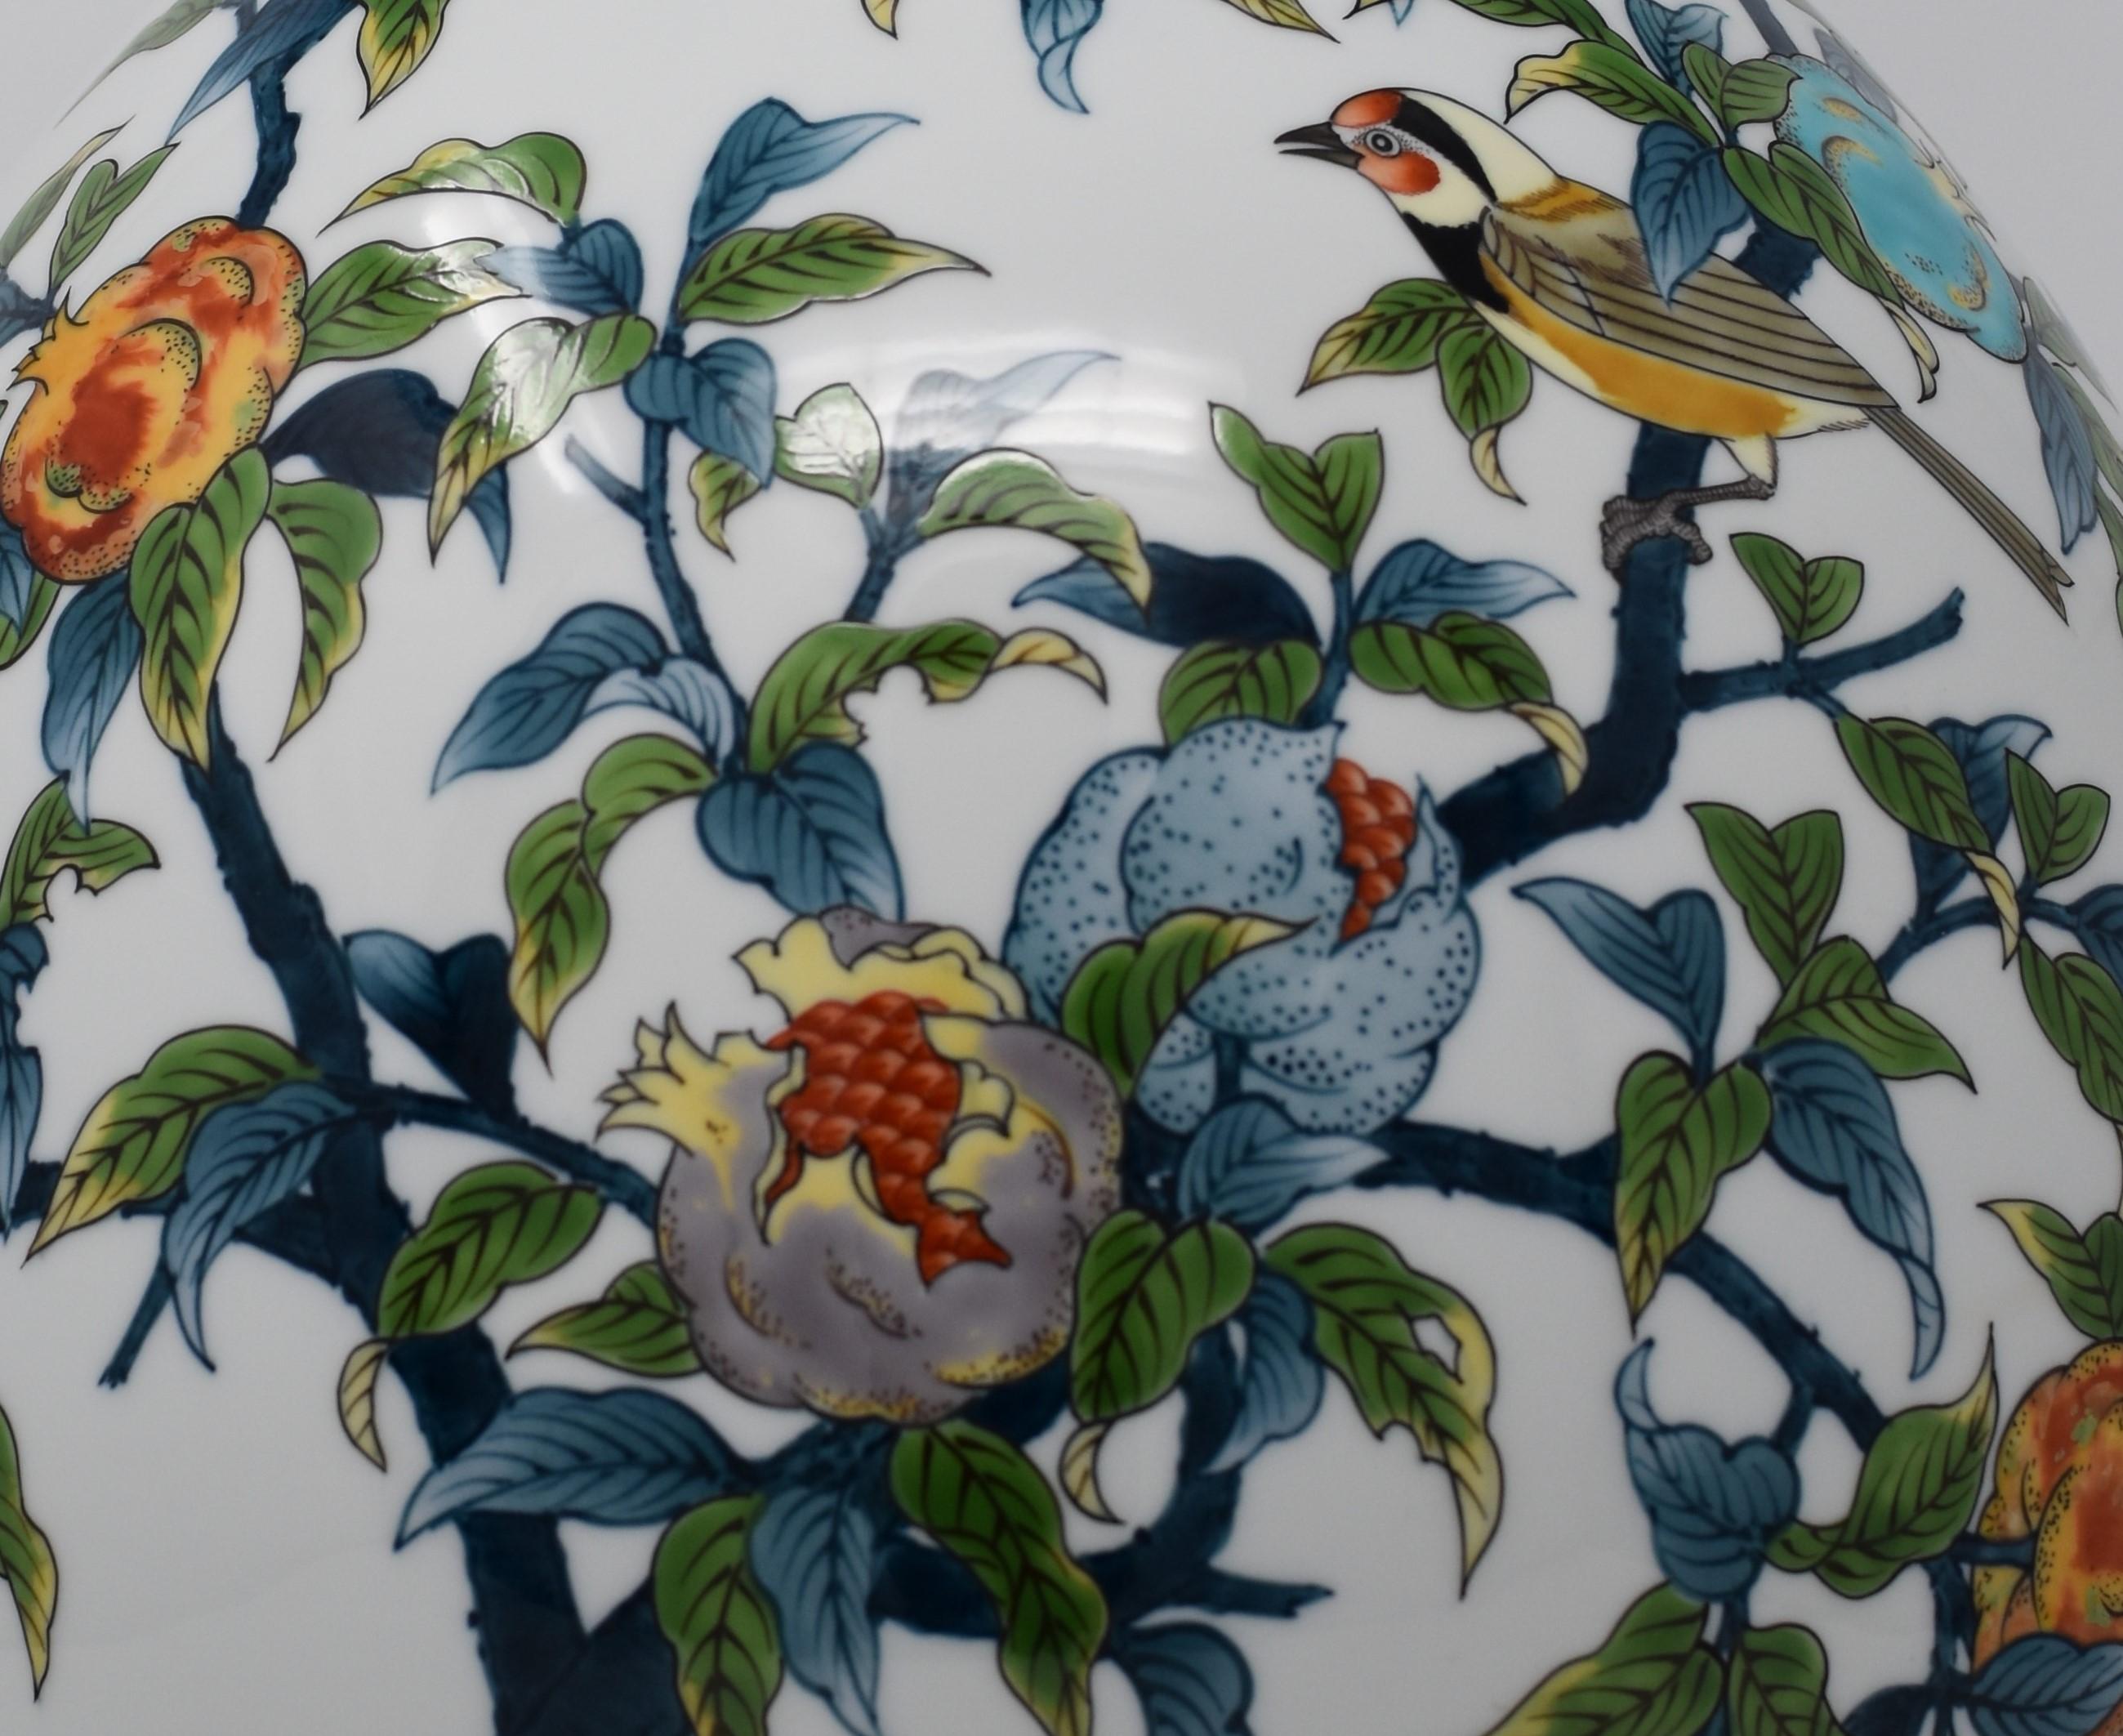 Außergewöhnliche zeitgenössische japanische Porzellanvase in Museumsqualität, atemberaubend handbemalt in Blau, Grün und Orange auf einem anmutig geformten, eiförmigen, rein weißen Porzellankörper, ein signiertes Meisterwerk des preisgekrönten und